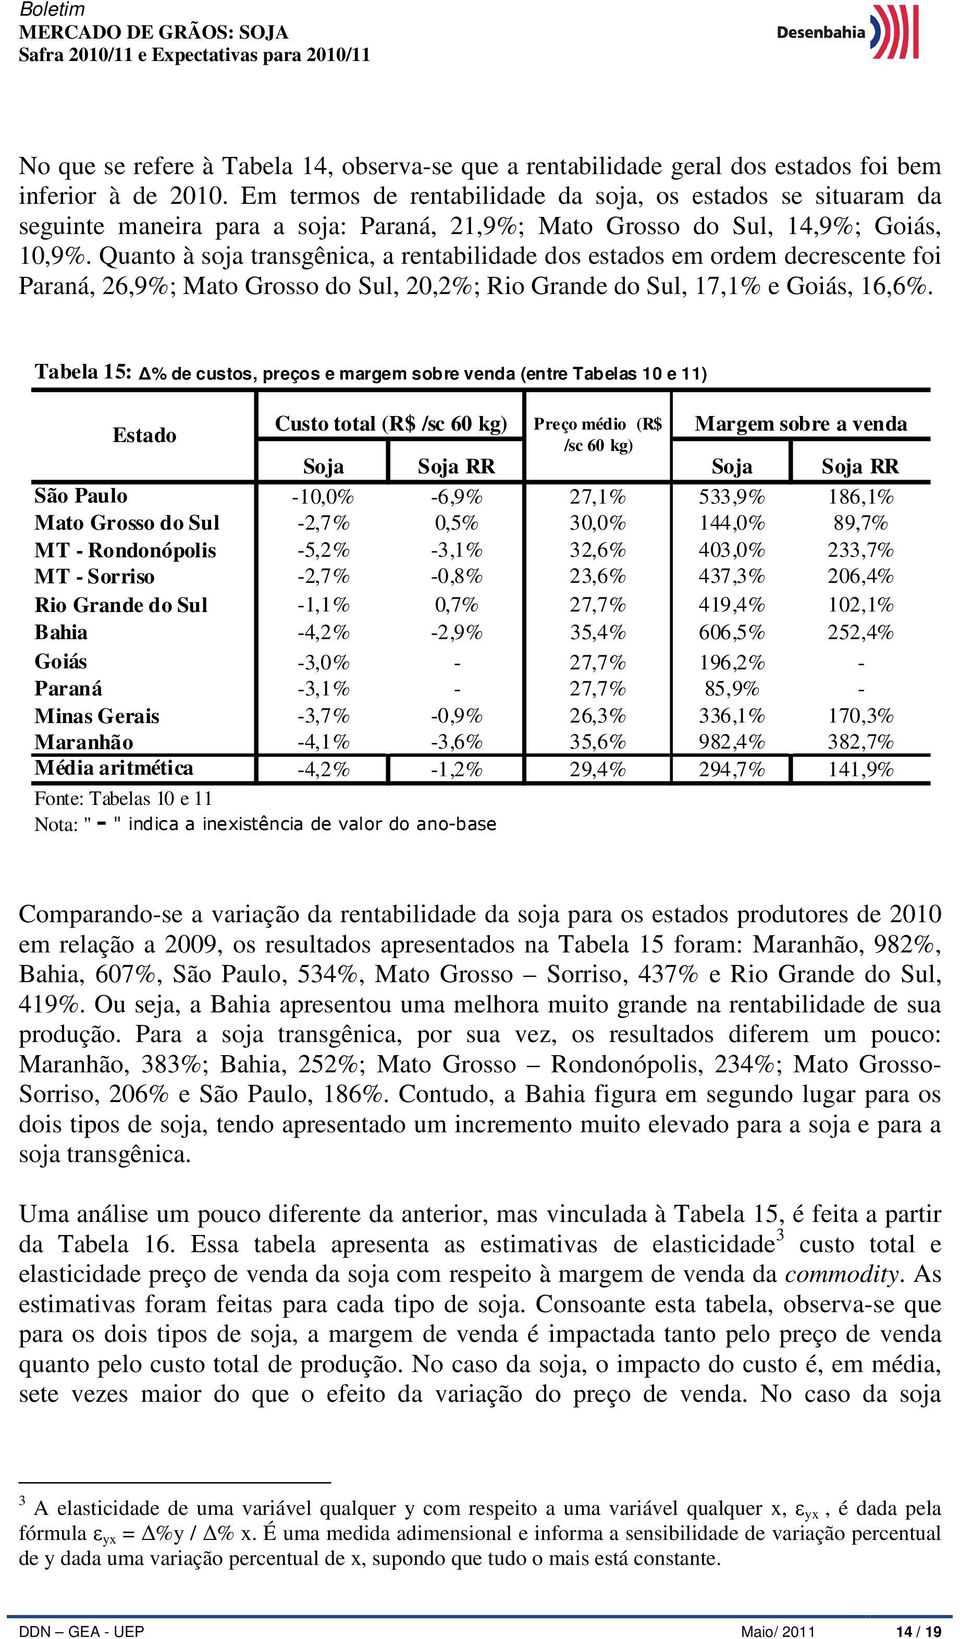 Quanto à soja transgênica, a rentabilidade dos estados em ordem decrescente foi Paraná, 26,9%; Mato Grosso do Sul, 20,2%; Rio Grande do Sul, 17,1% e Goiás, 16,6%.